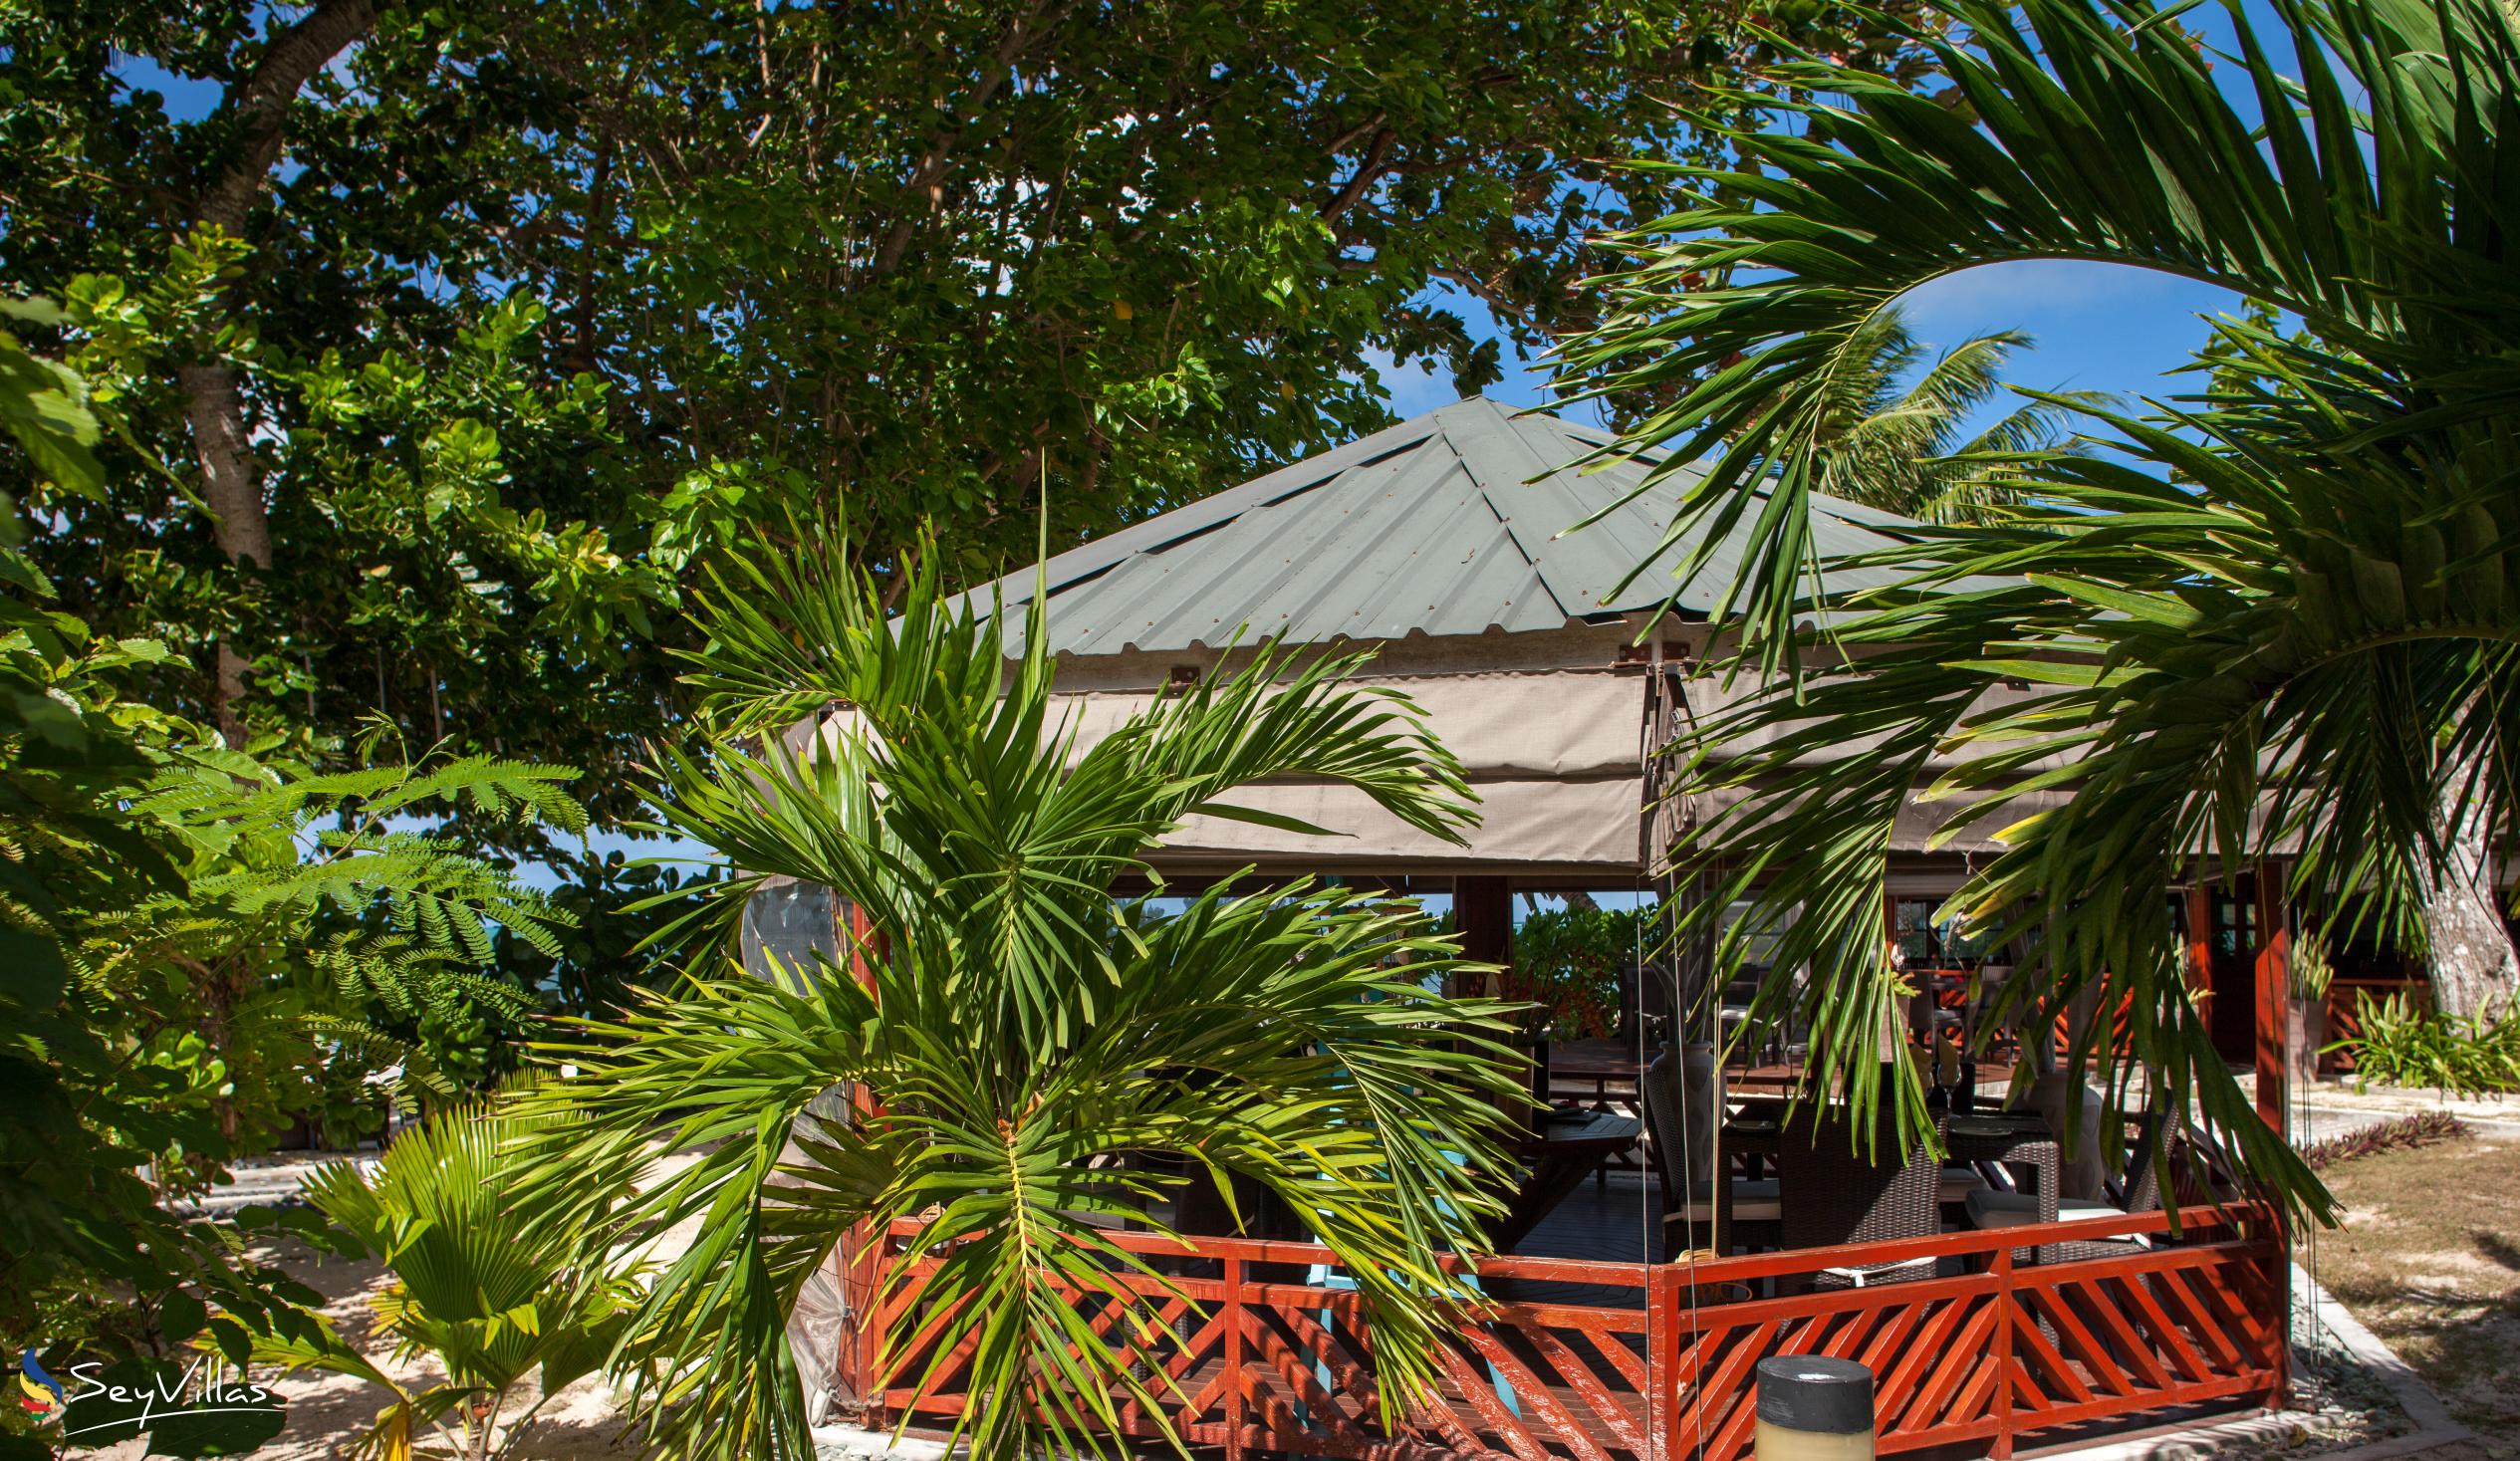 Photo 12: Villas de Mer - Outdoor area - Praslin (Seychelles)